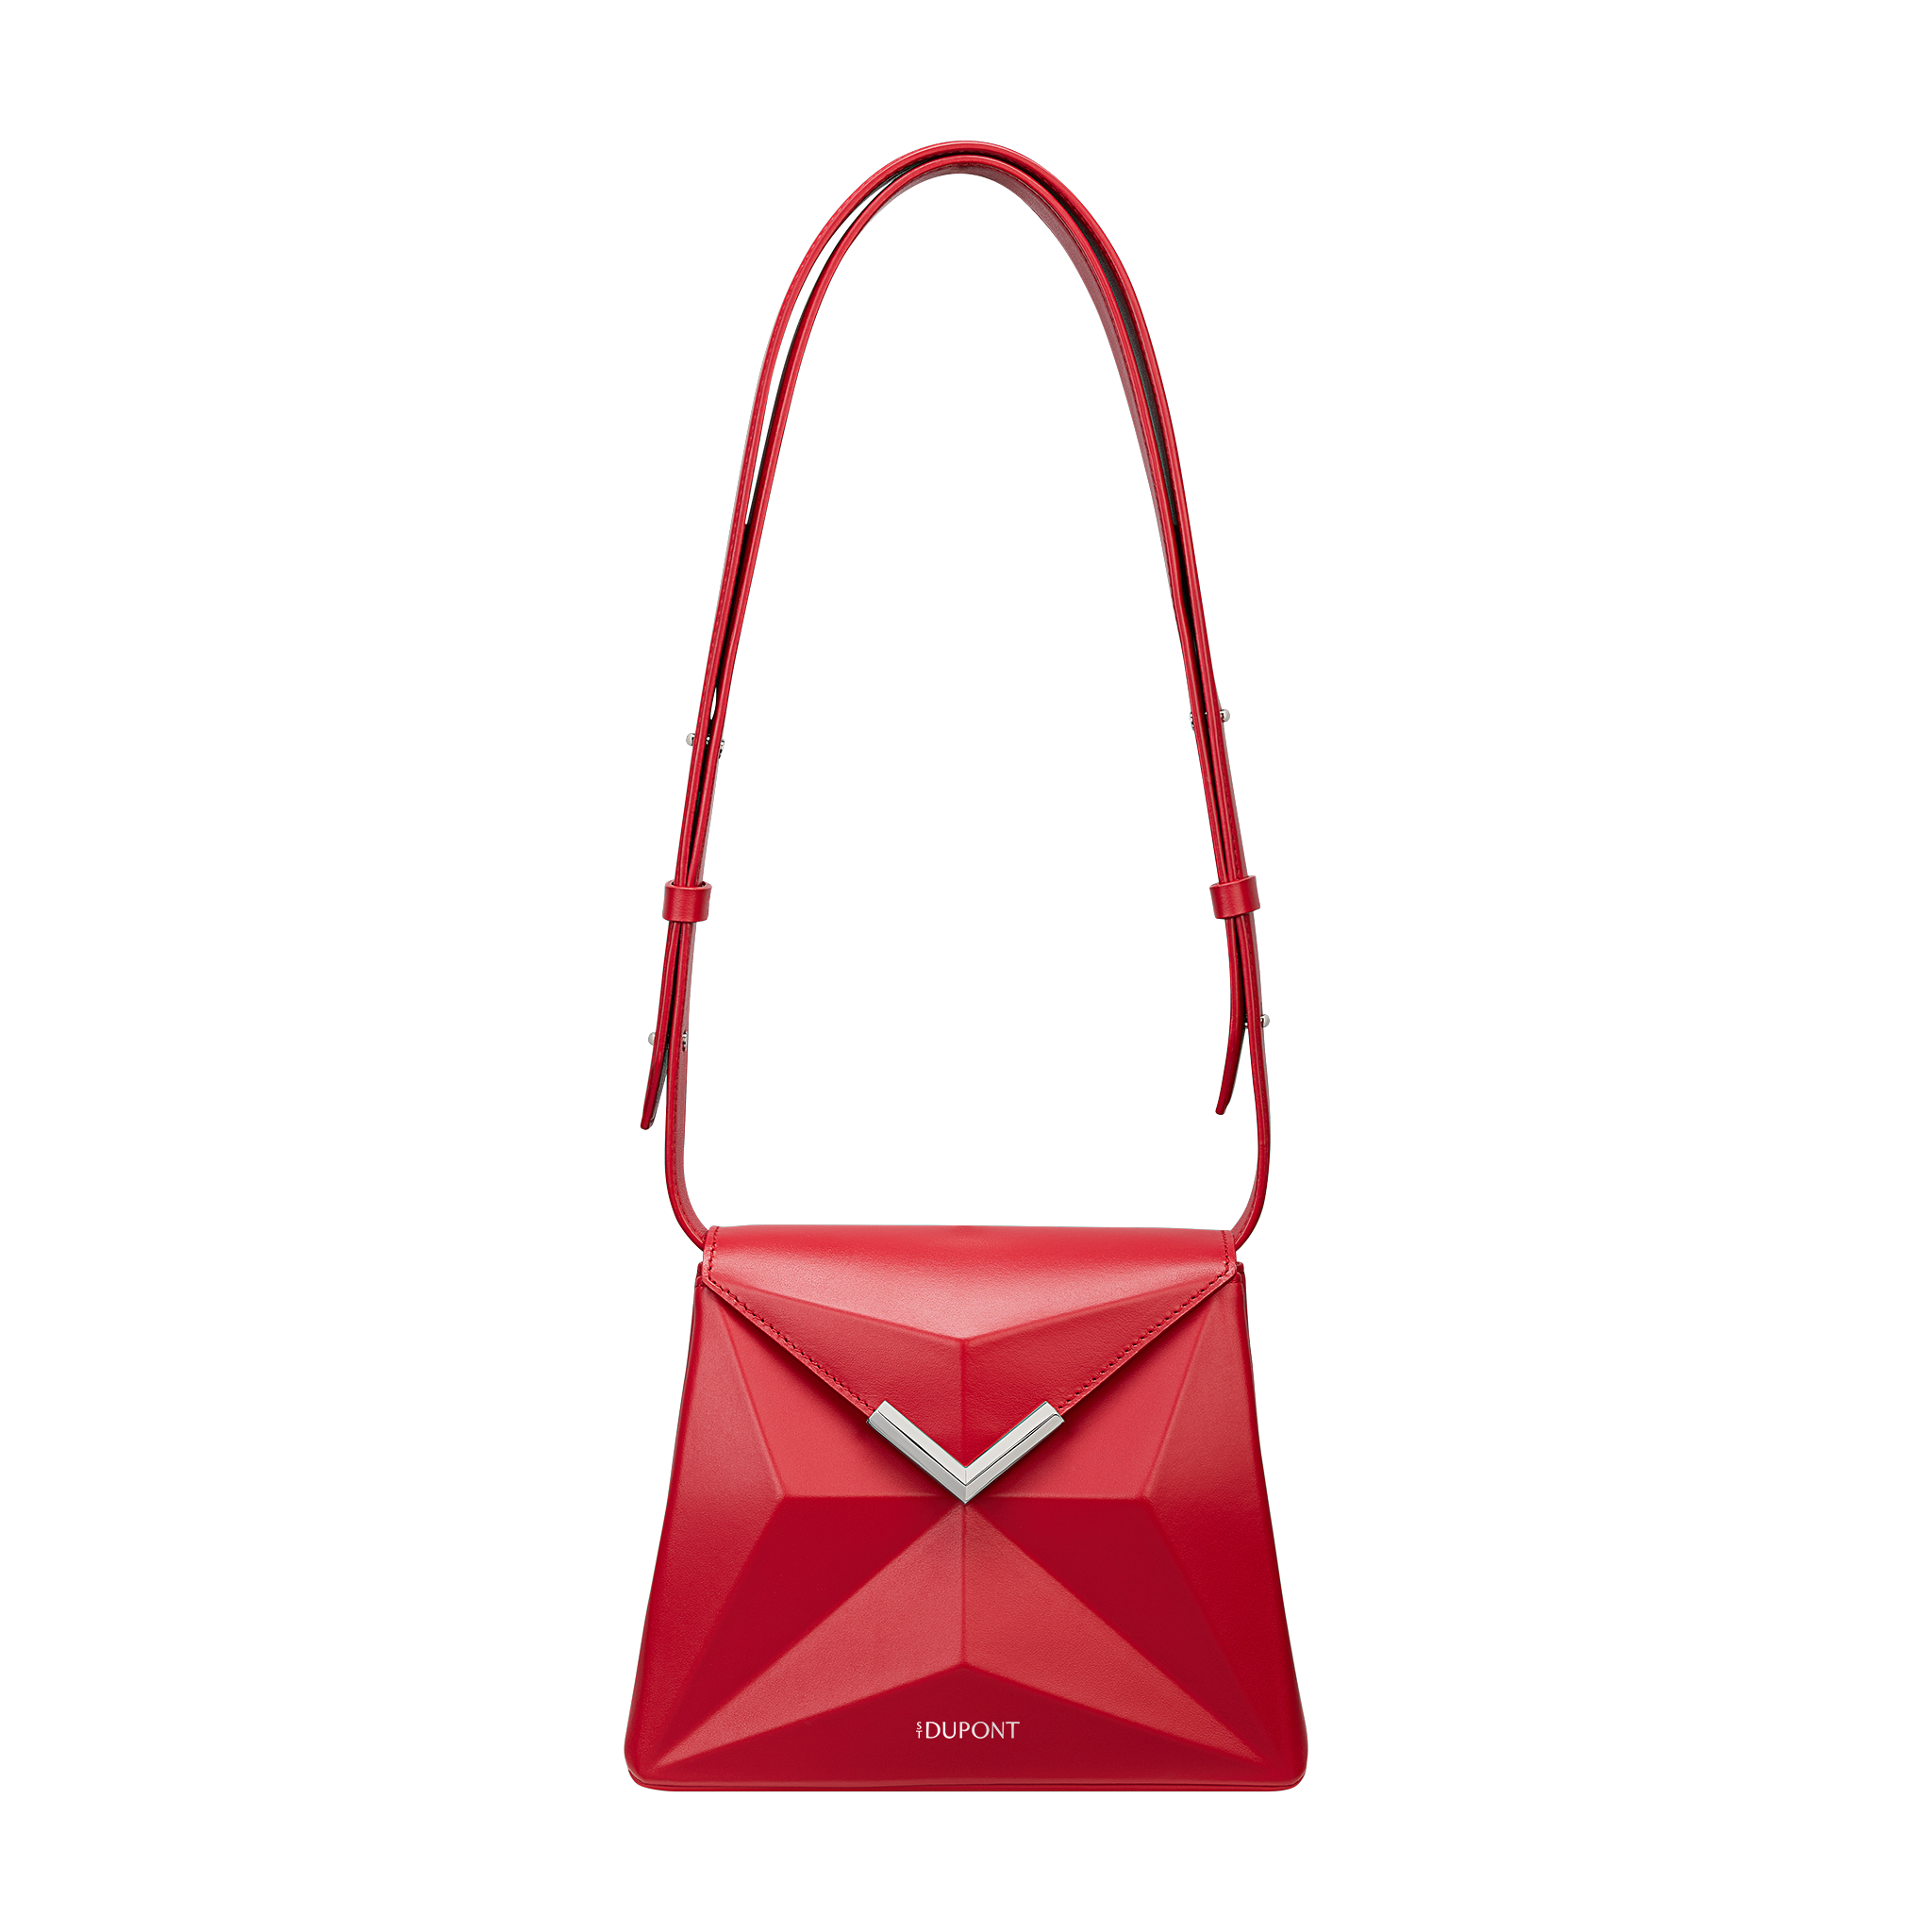 X bag Mini rouge ST Dupont